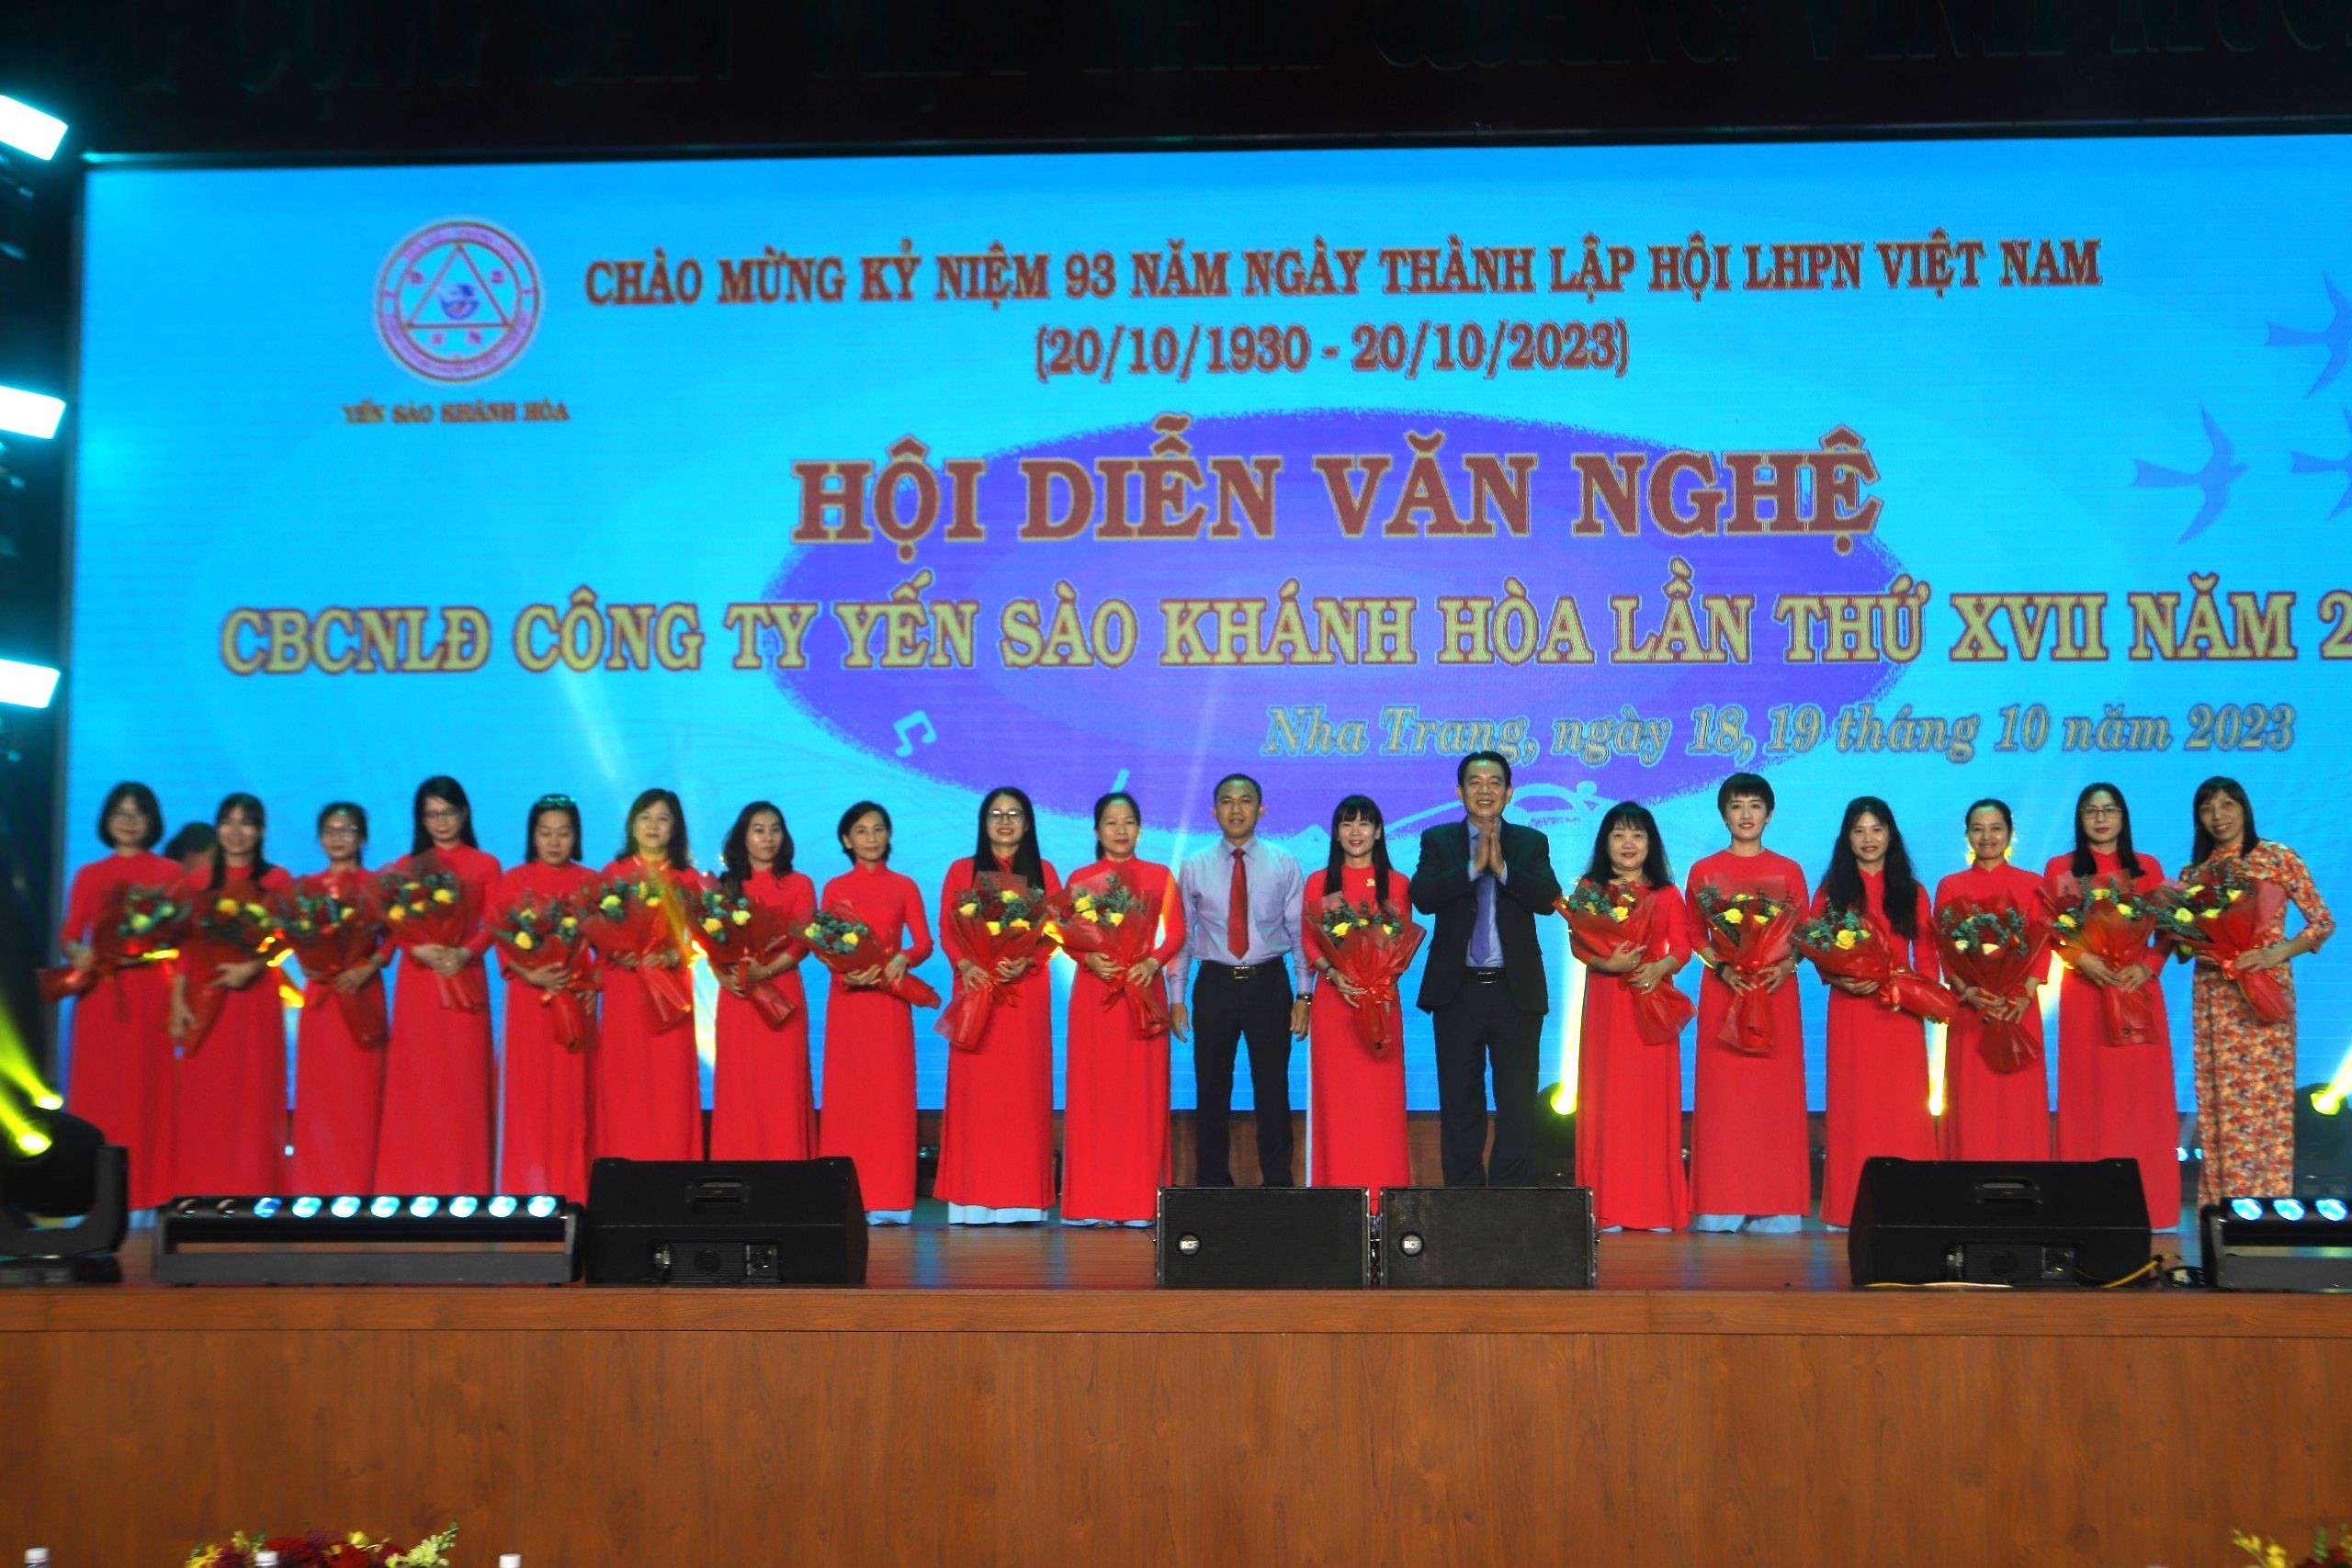 Công ty Yến sào Khánh Hòa tổ chức hội diễn văn nghệ tôn vinh phụ nữ Việt Nam